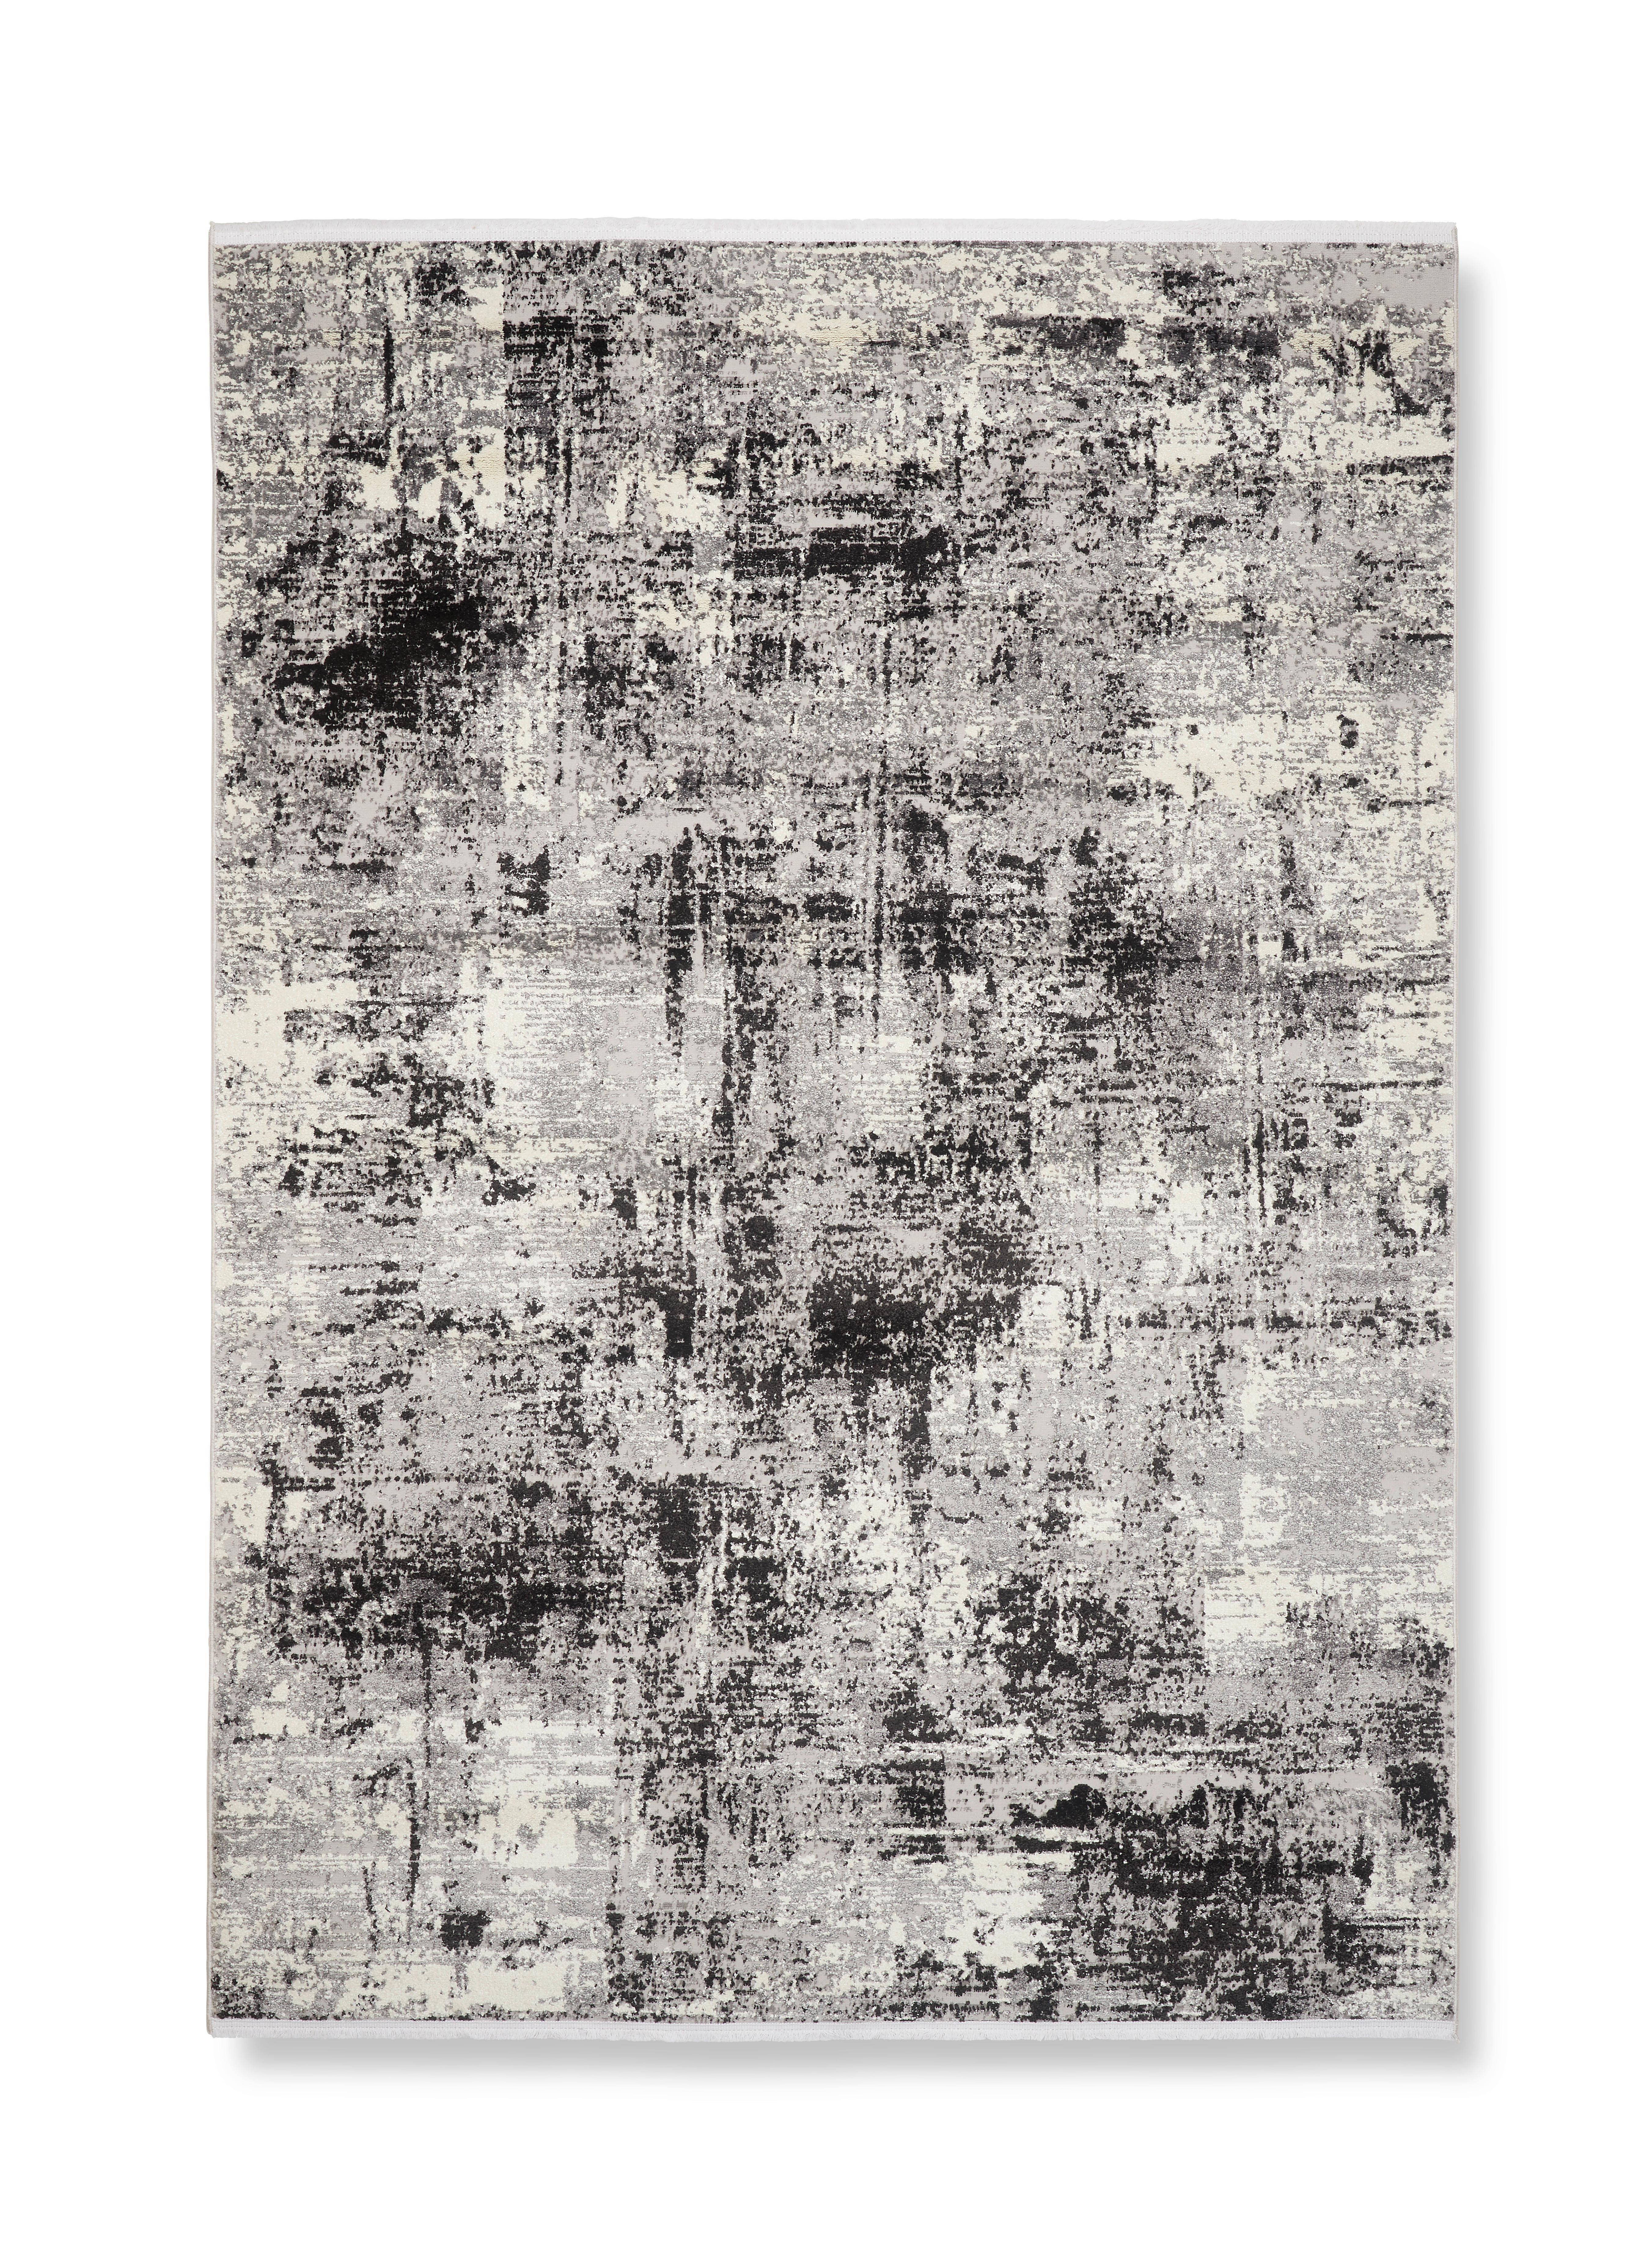 Tkaný Koberec Malik 1, 80/150cm - čierna/antracitová, Moderný, textil (80/150cm) - Modern Living